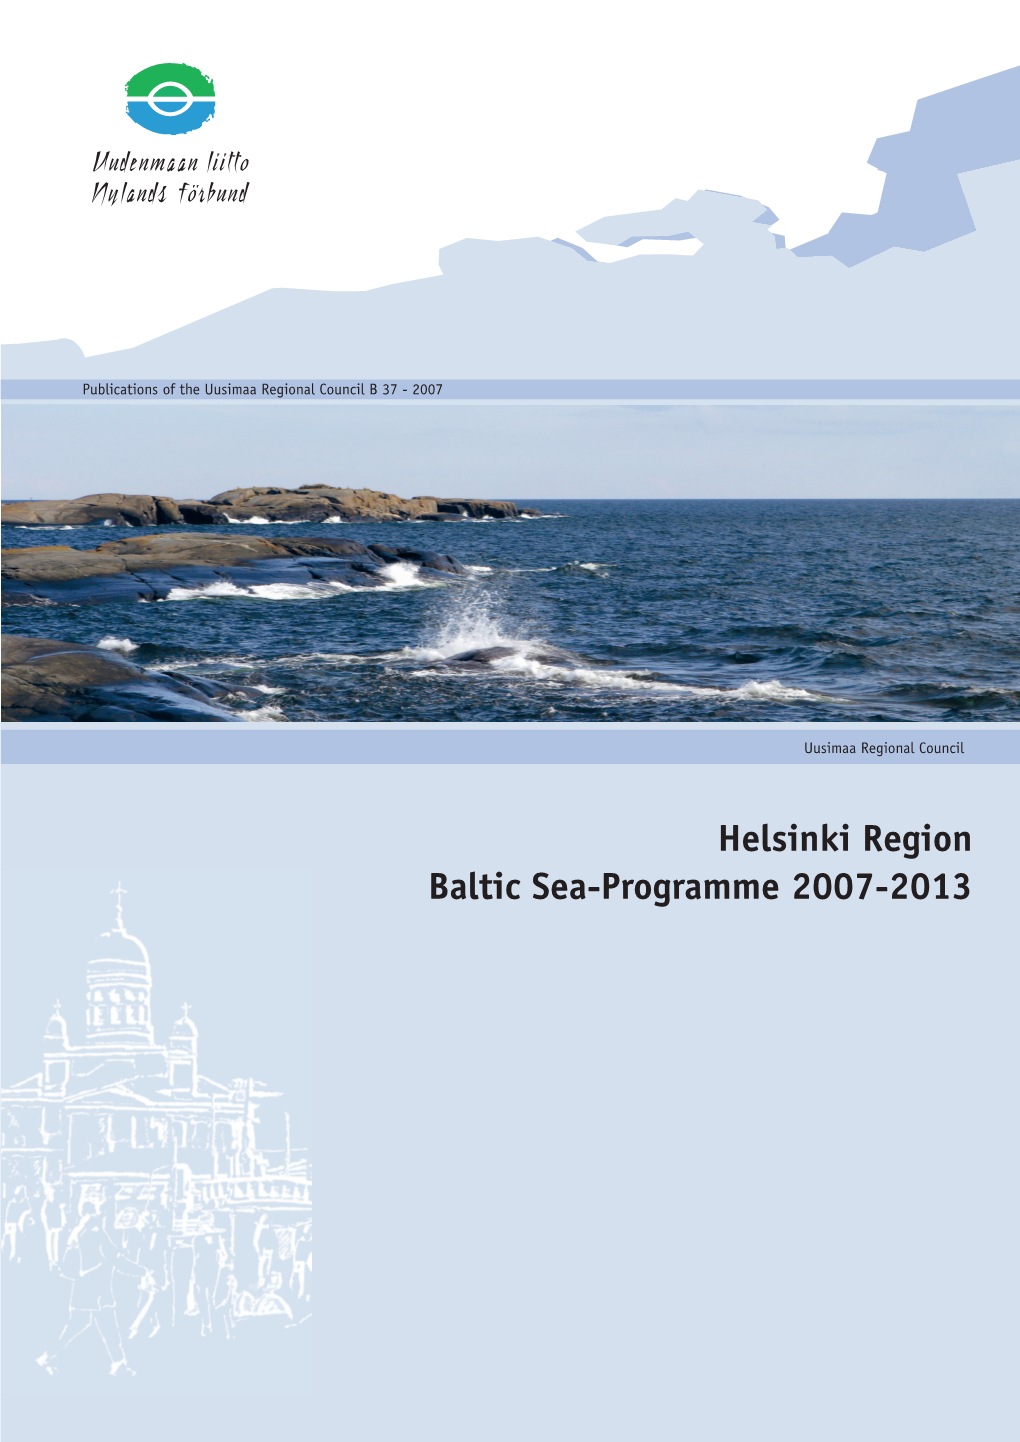 Helsinki Region Baltic Sea-Programme 2007-2013